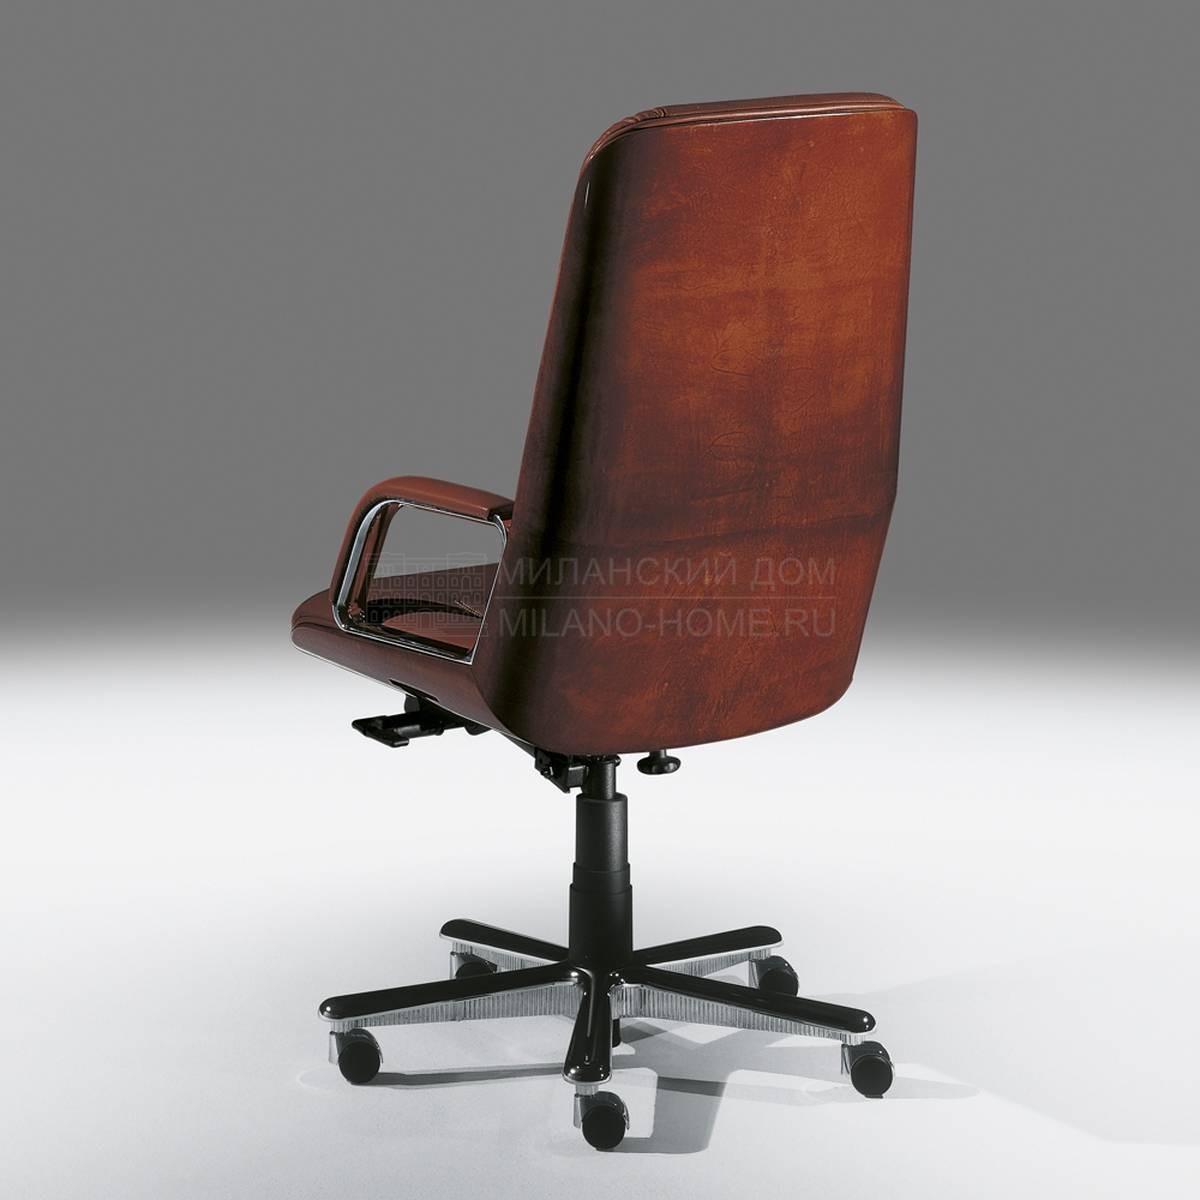 Кожаное кресло 2617 из Италии фабрики TURA